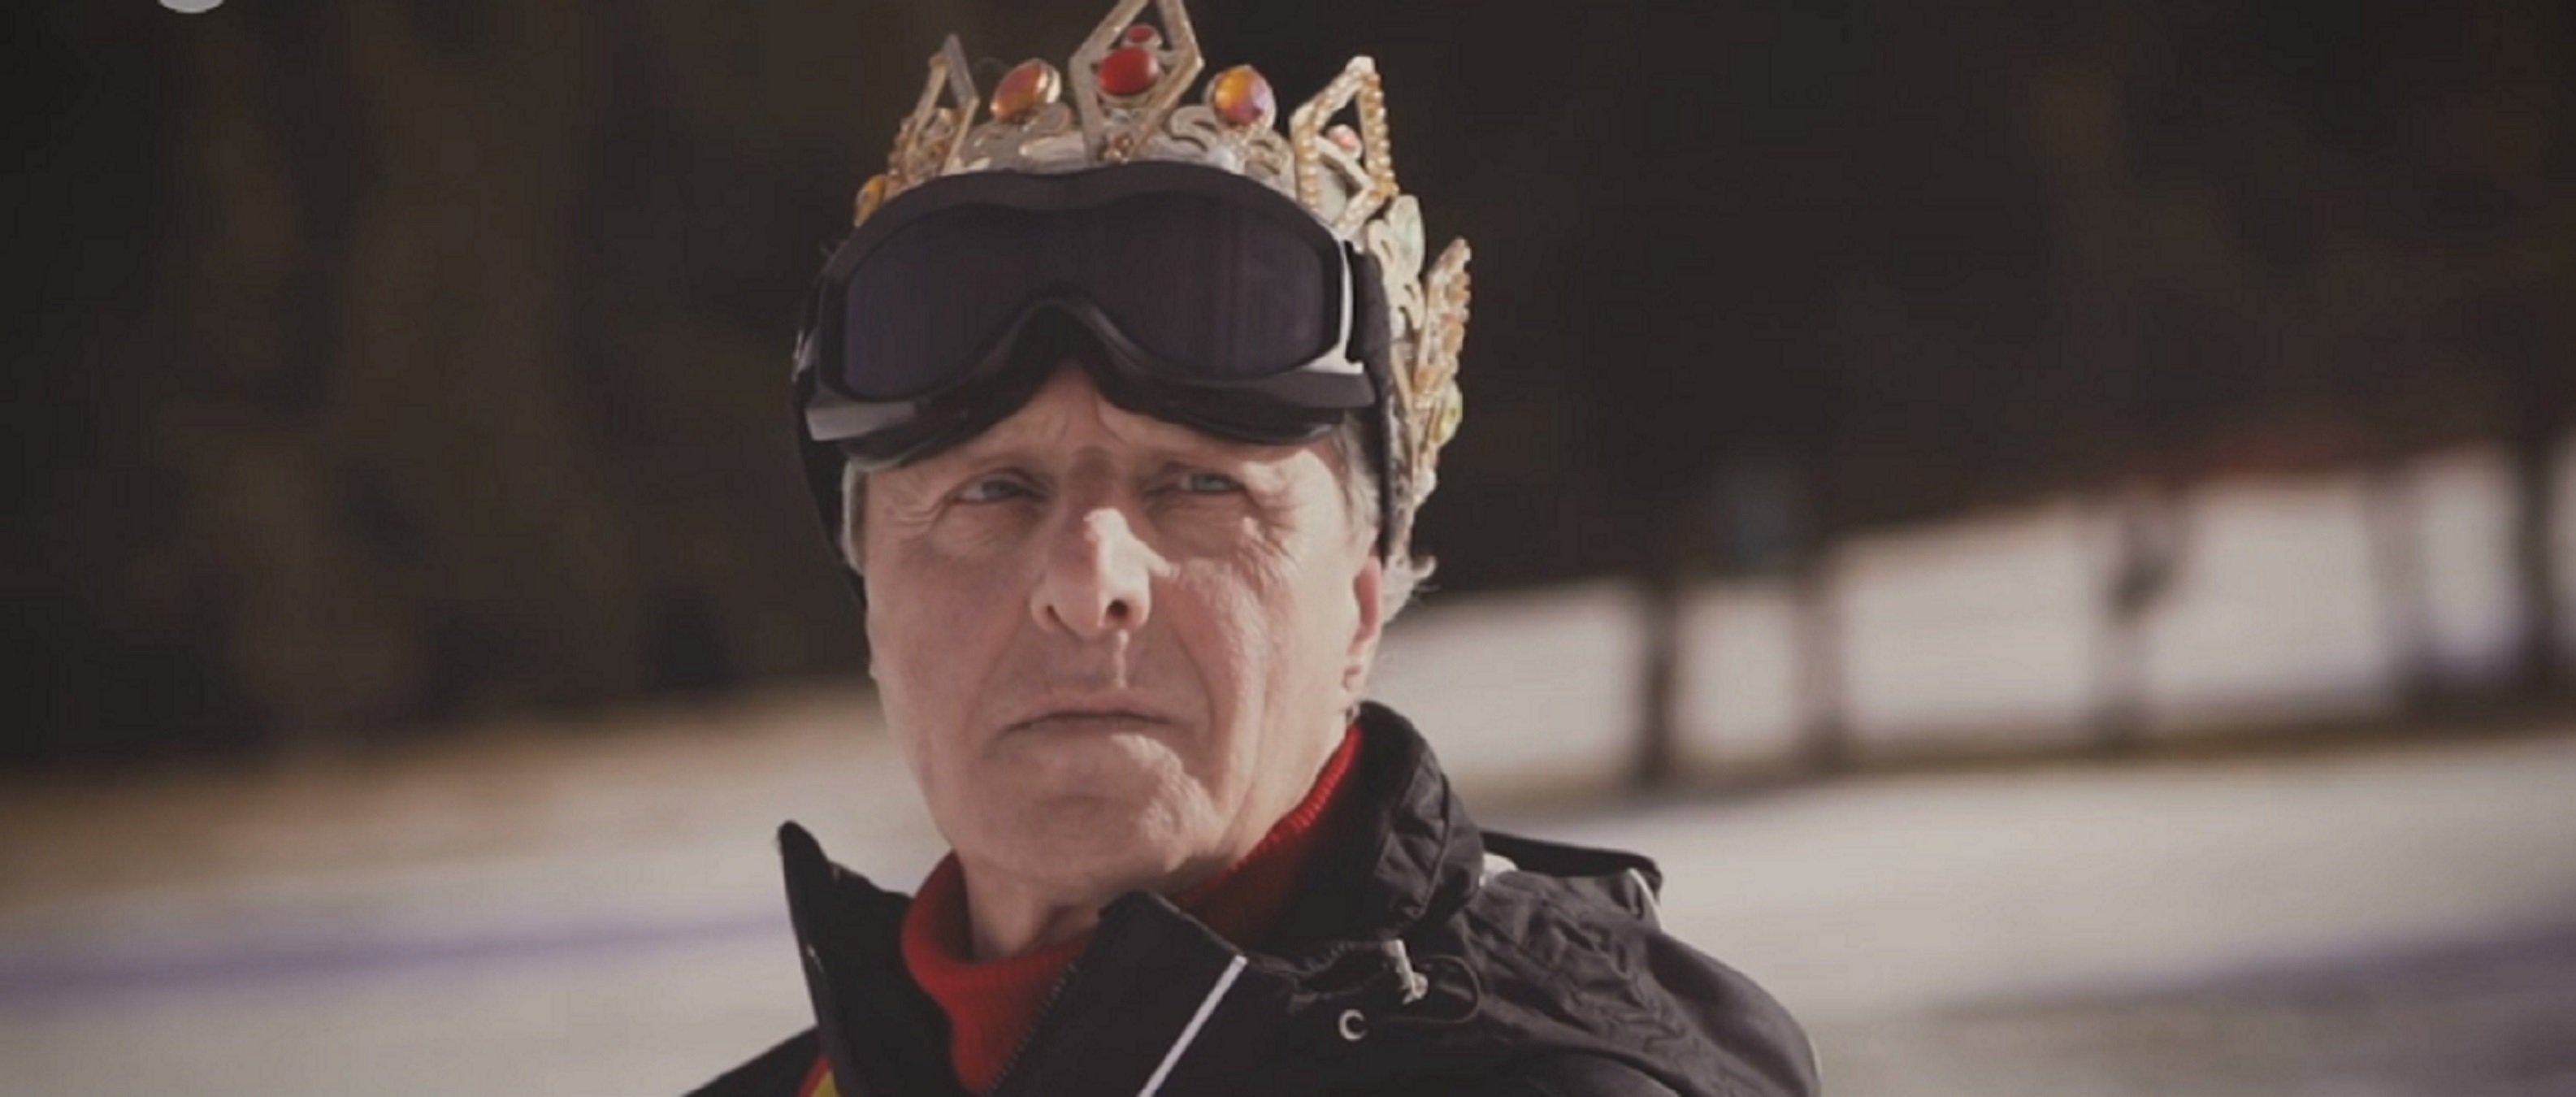 El hijo del Rey, esquiando con corona y bandera de España en TV3: "Hago como ellos"